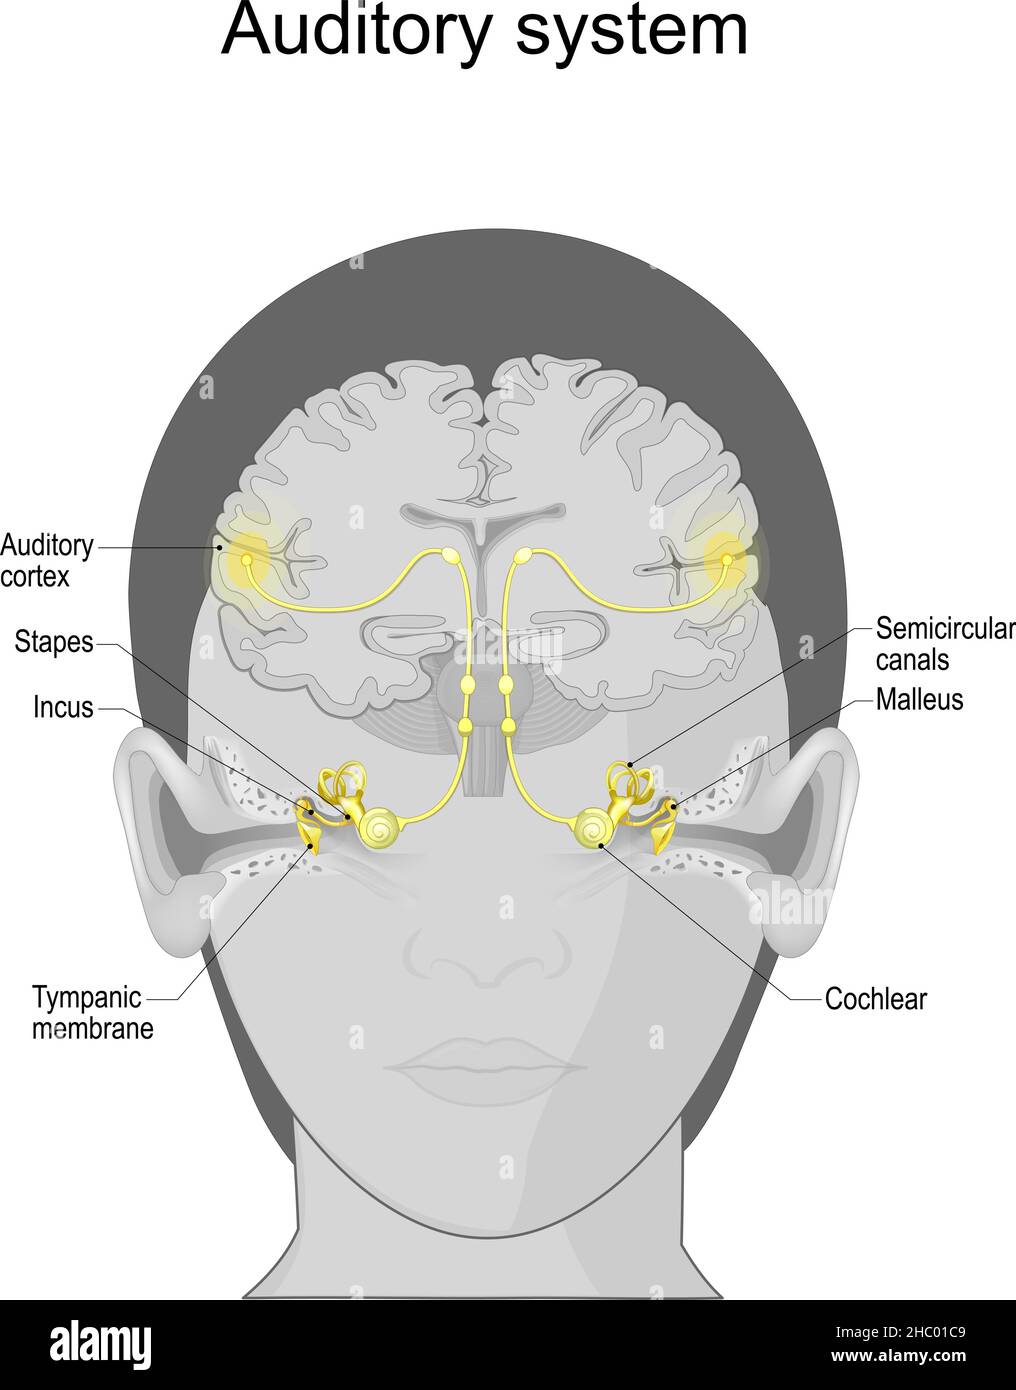 Sistema uditivo da membrana timpanica e Cochlear nell'orecchio a corteccia uditiva sul cervello. Sistema sensoriale per il senso dell'udito. Anatomia Illustrazione Vettoriale